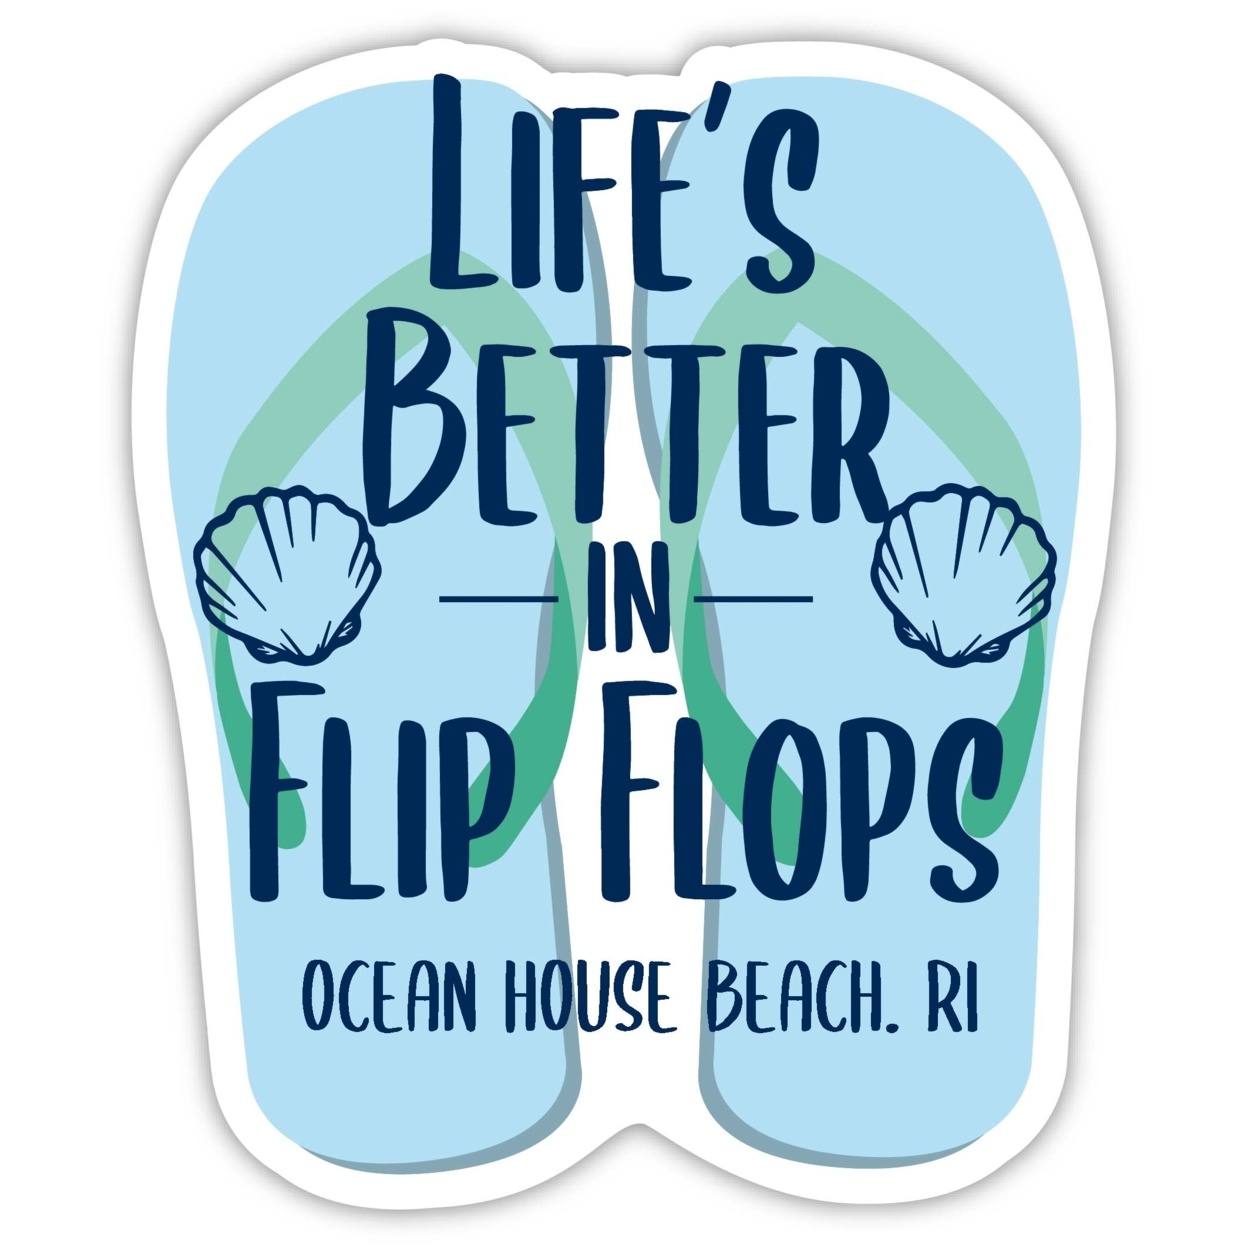 Ocean House Beach Rhode Island Souvenir 4 Inch Vinyl Decal Sticker Flip Flop Design